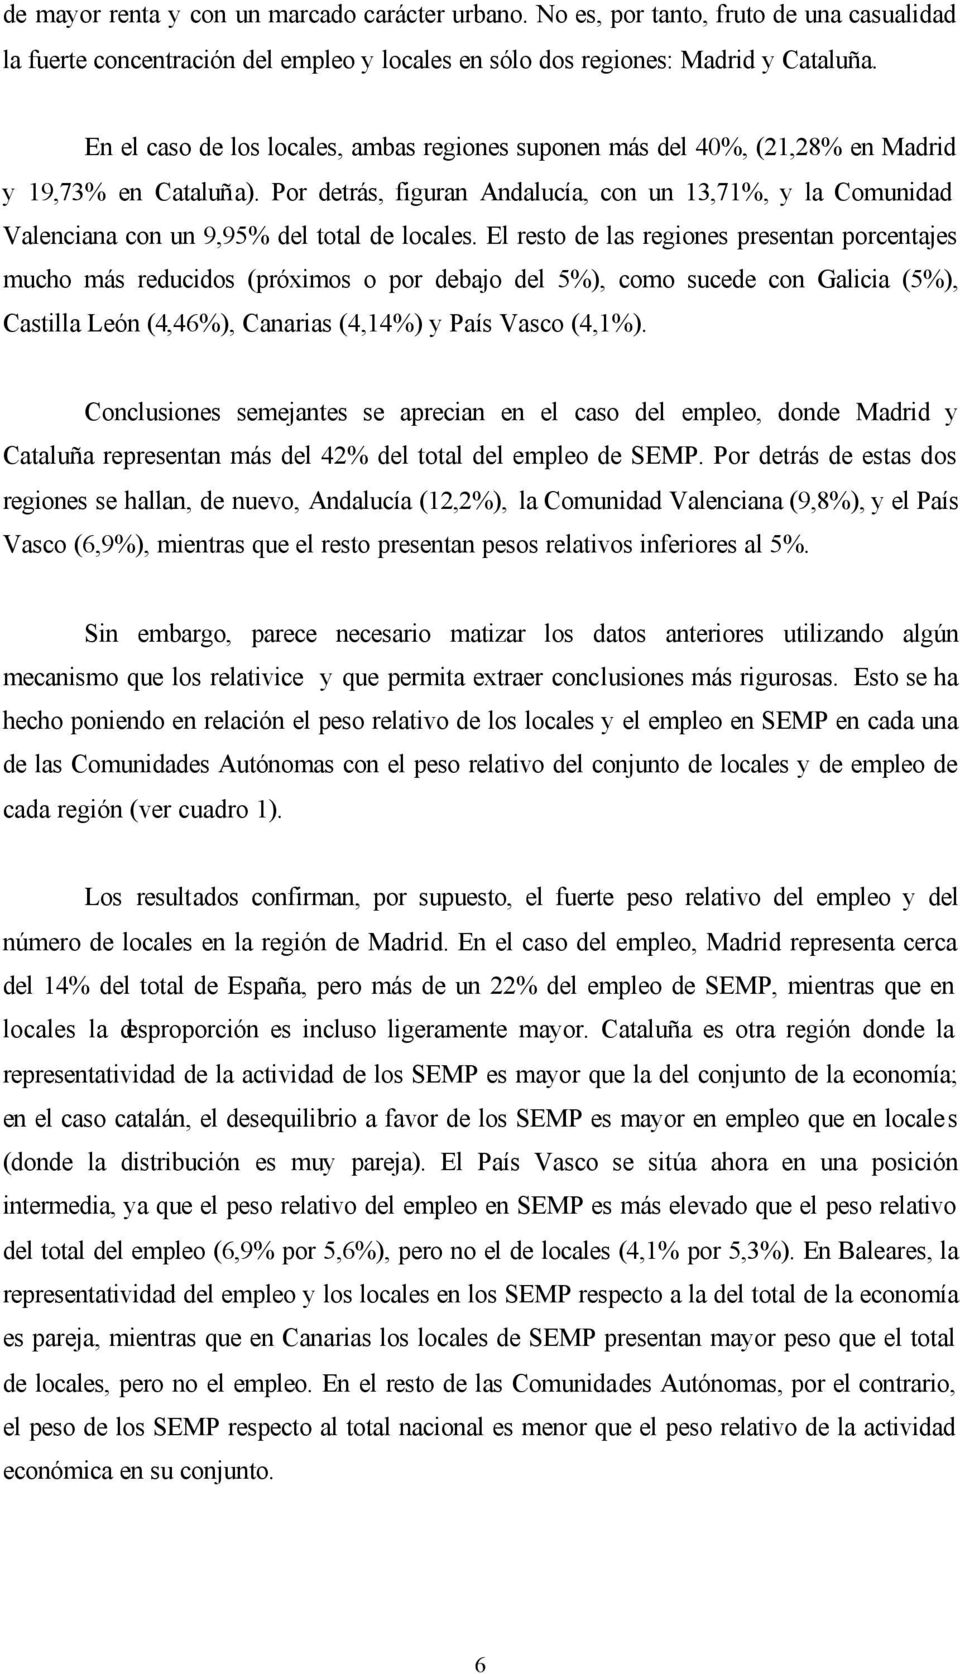 Por detrás, figuran Andalucía, con un 13,71%, y la Comunidad Valenciana con un 9,95% del total de locales.